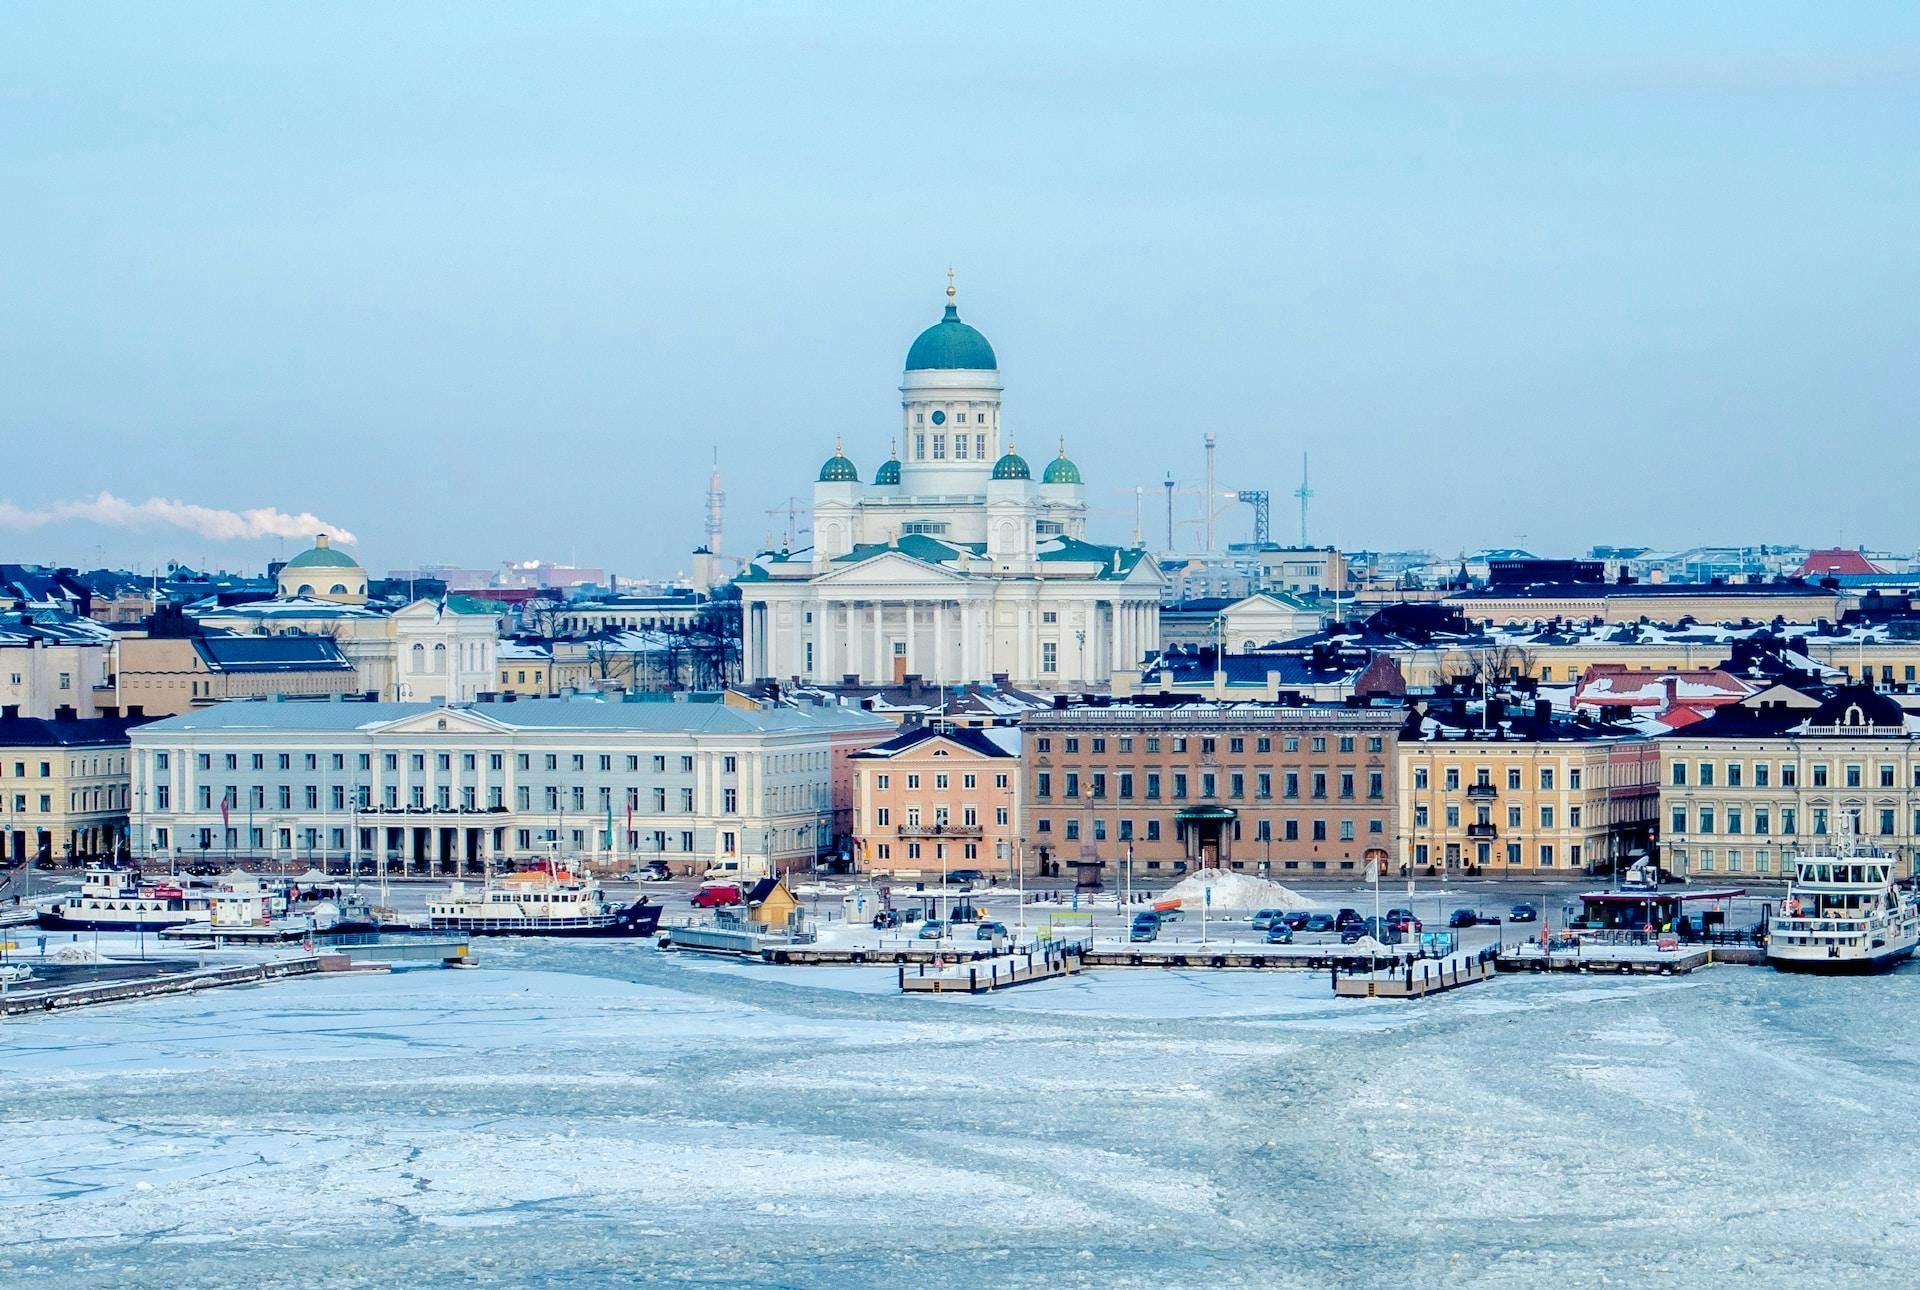 Helsinki in the winter, work in EU